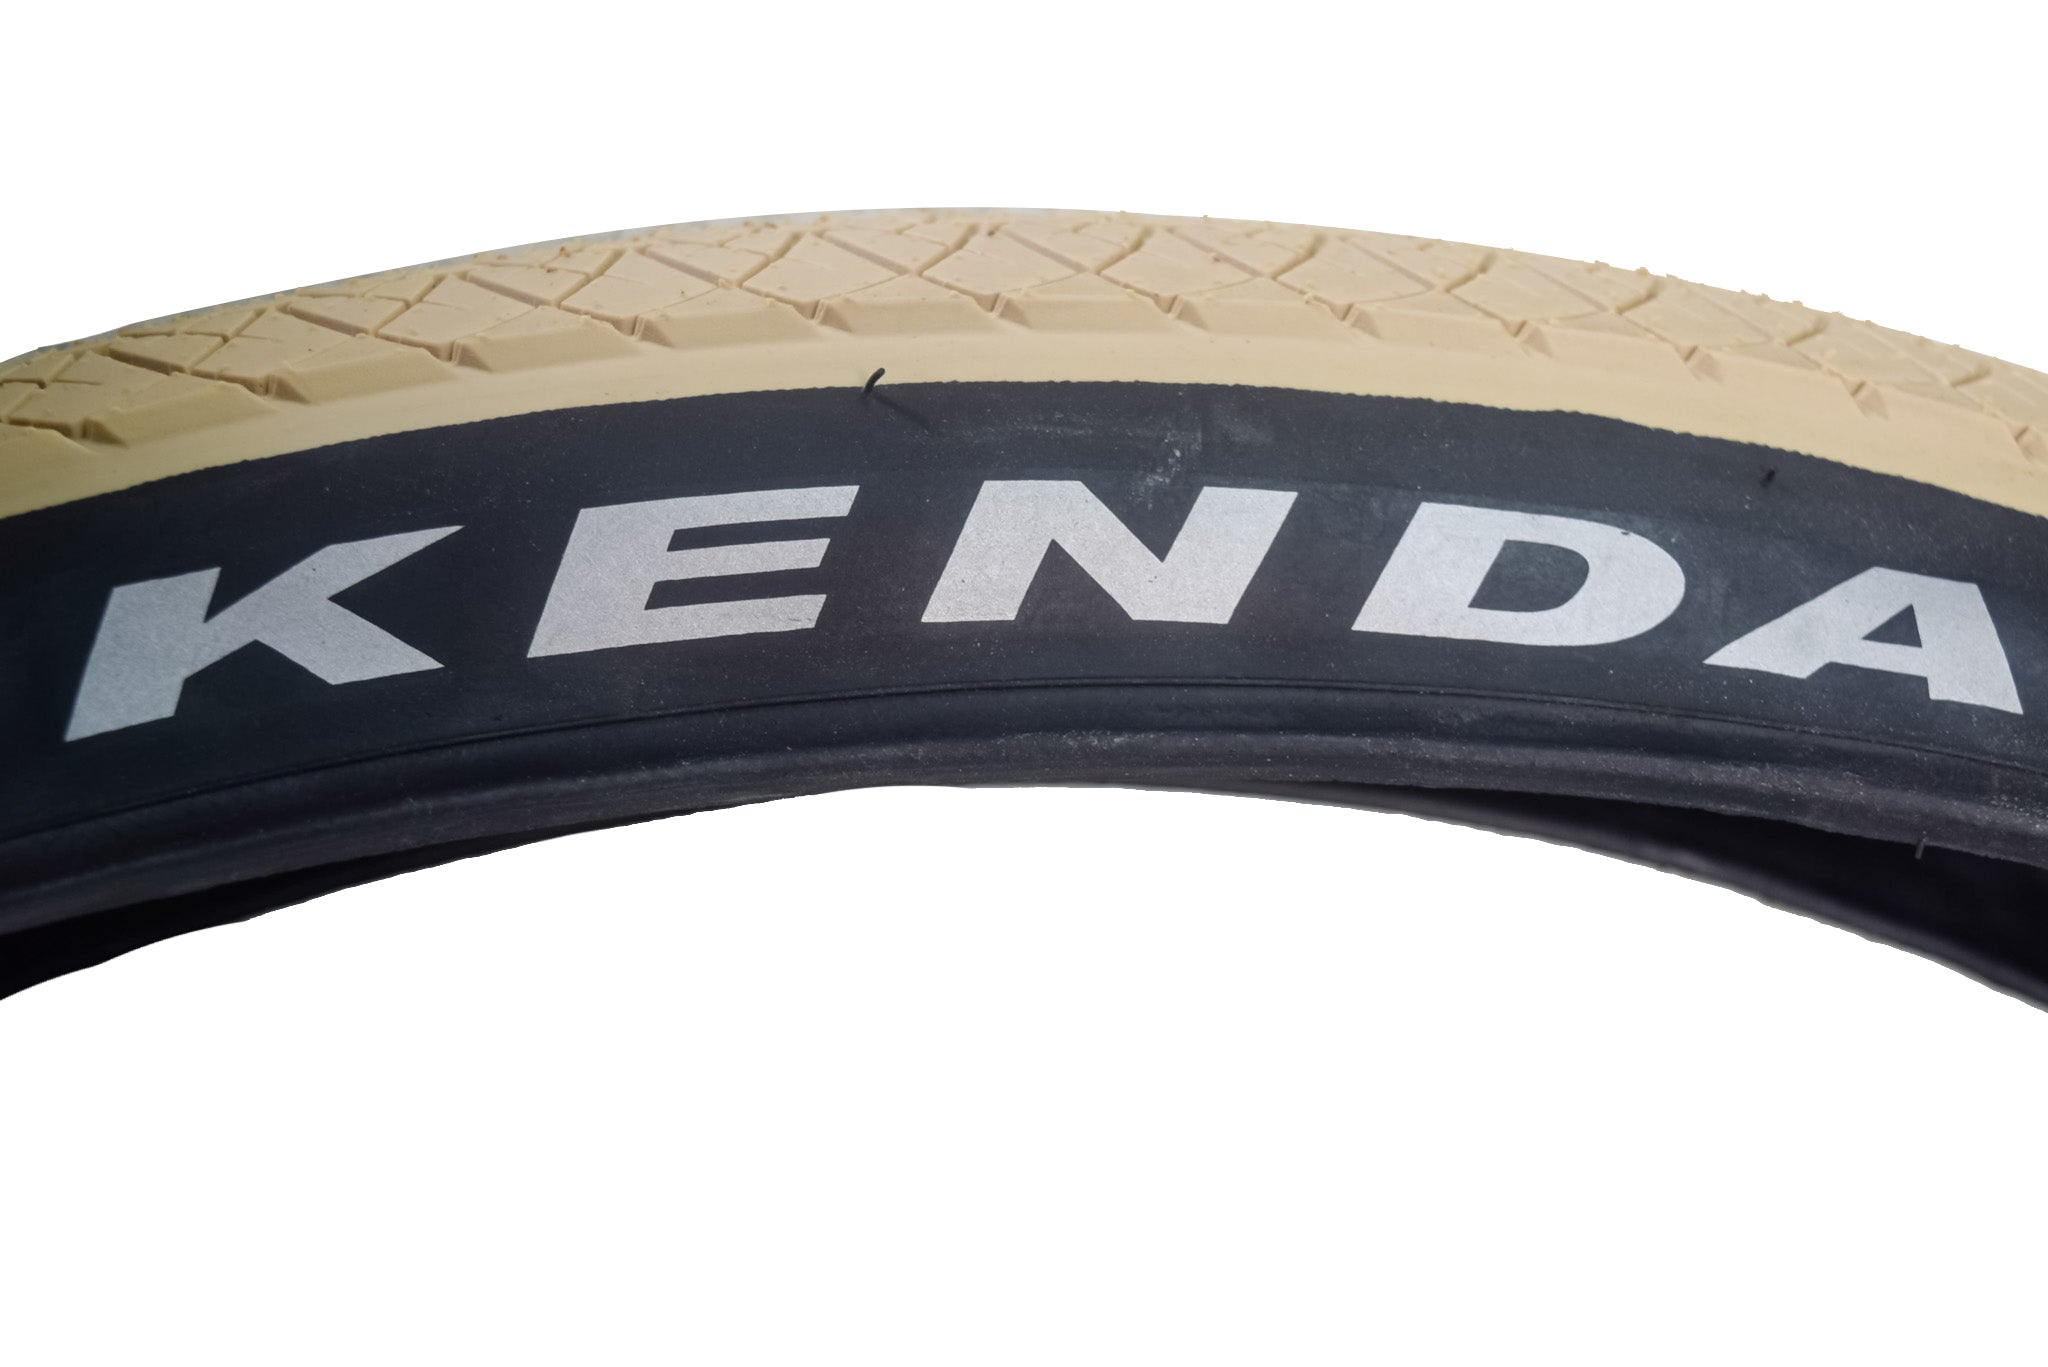 Kenda 3-Sixty Pro TR 120tpi Fold Tan 26x2.5 Bicycle Tire & Keychain (Single)